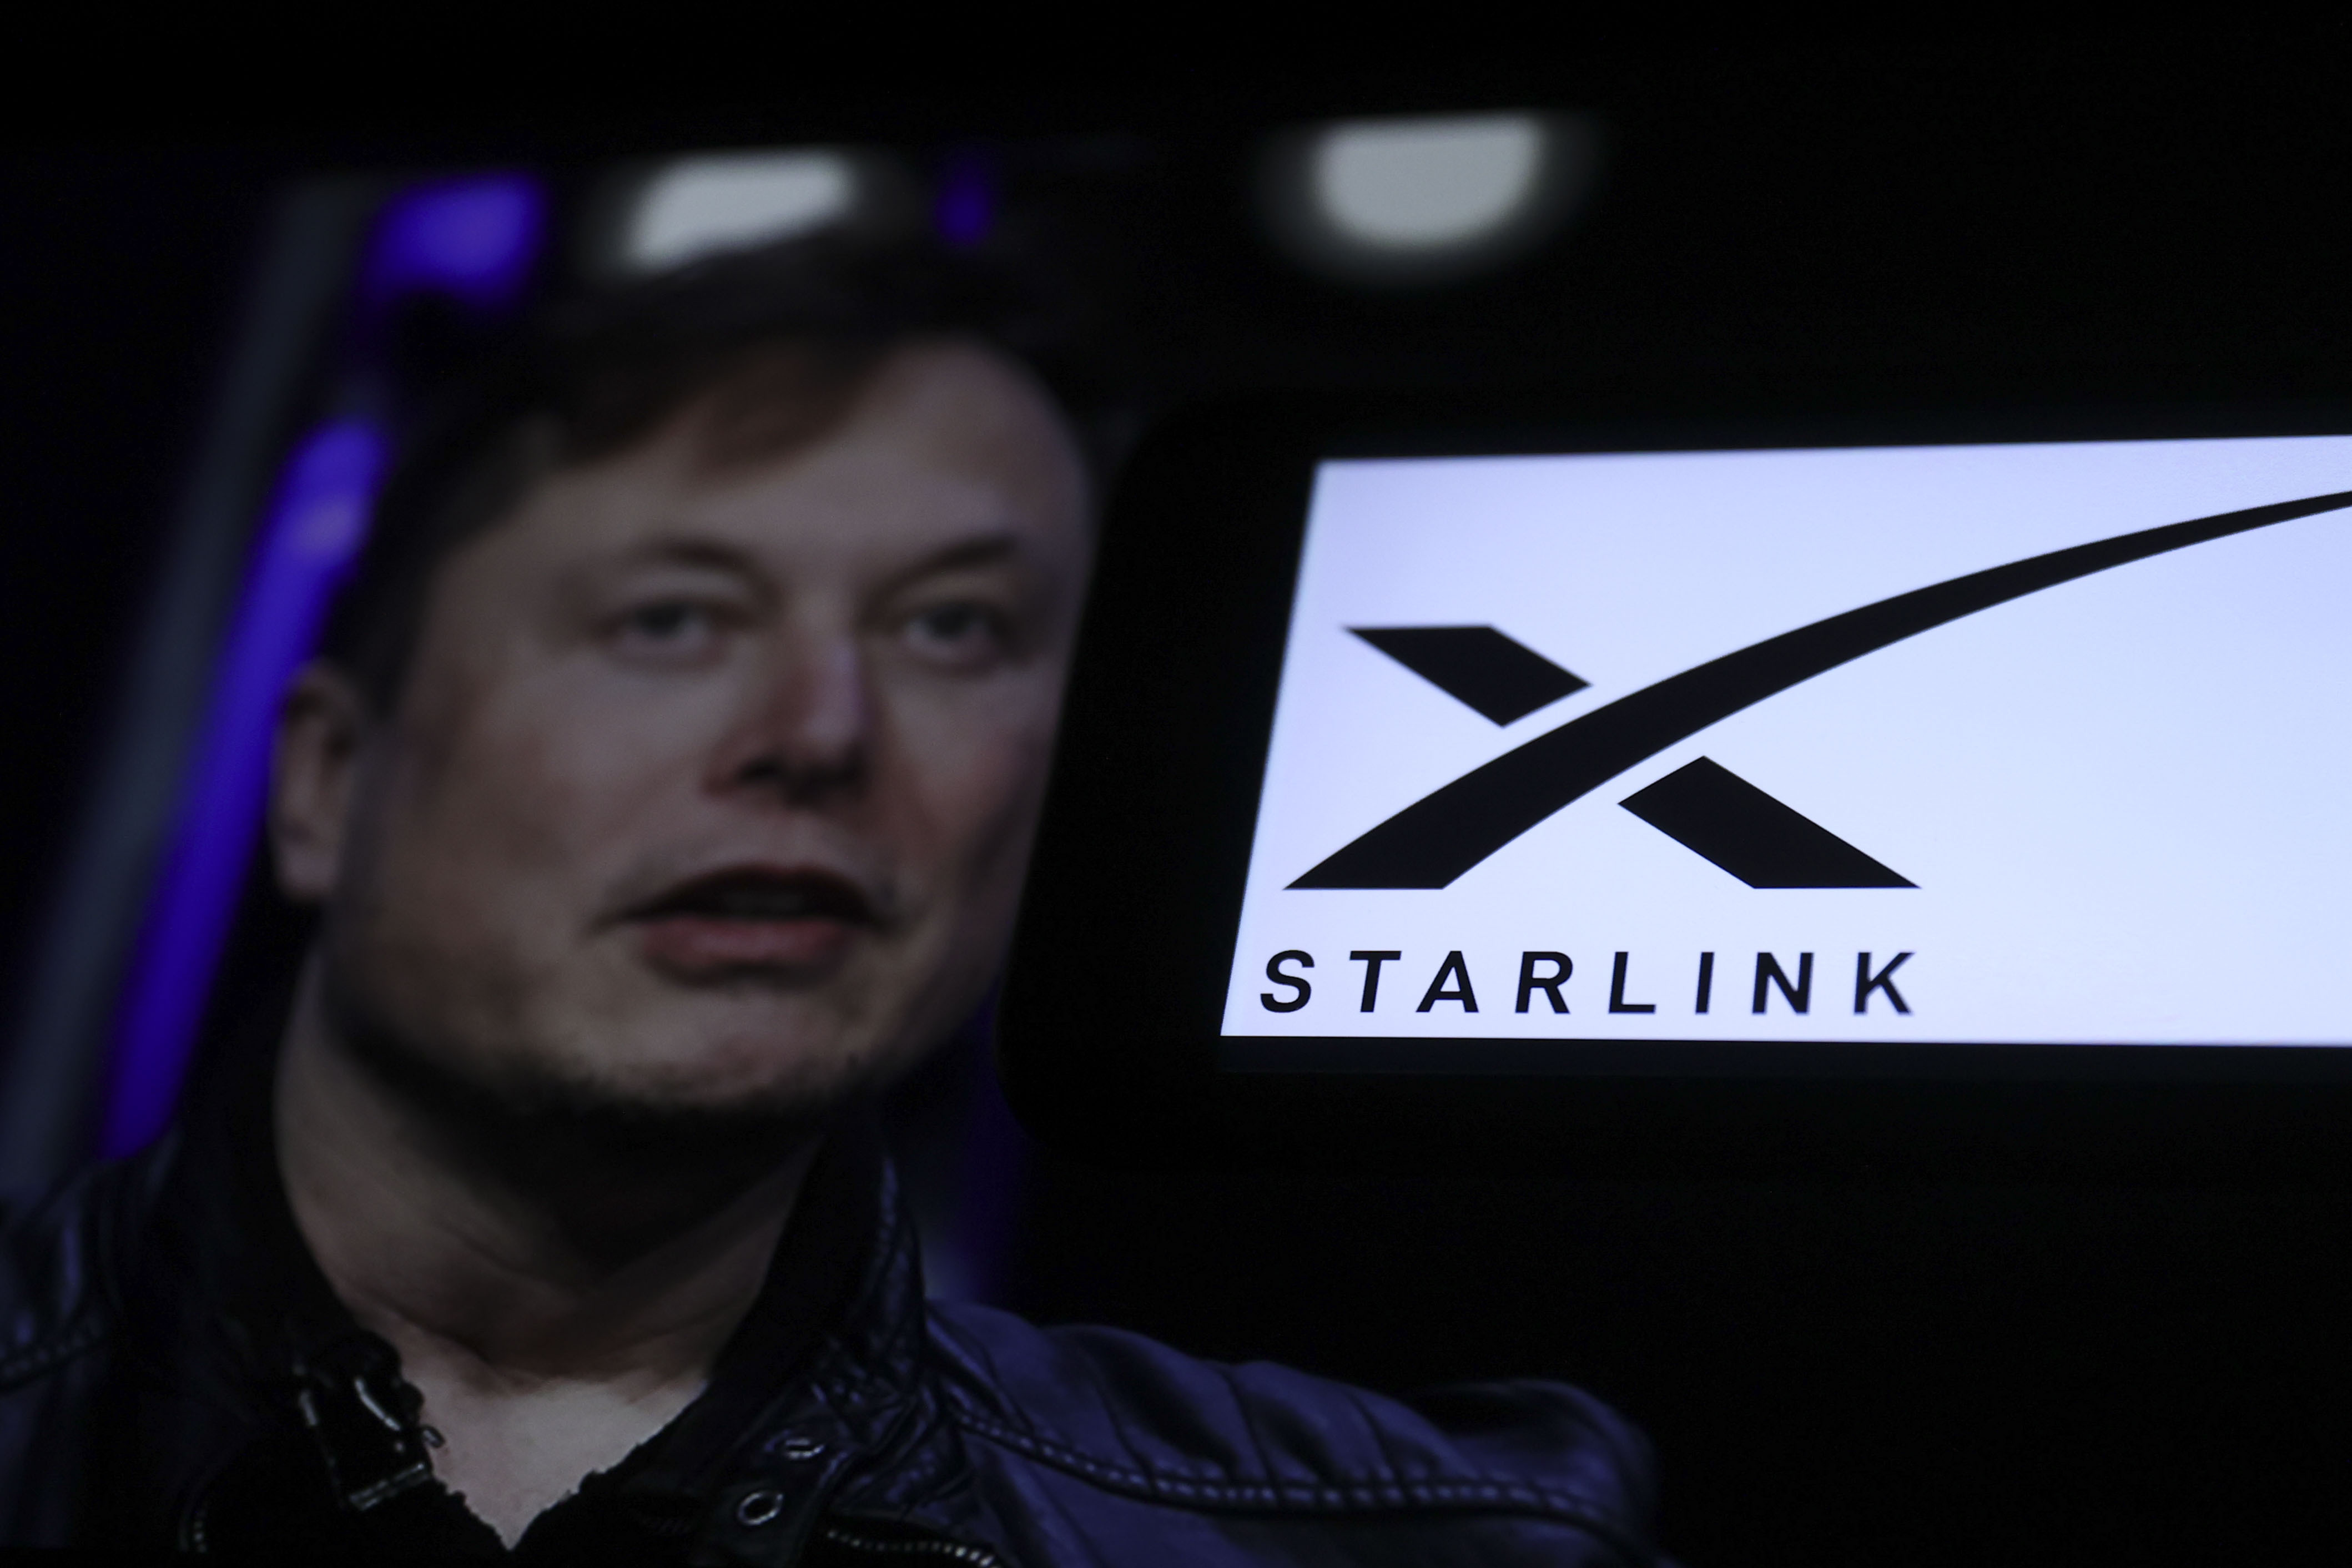 บริการอินเทอร์เน็ตผ่านดาวเทียม Starlink ของผู้ที่เป็นเจ้าของบริษัท Elon Musk ถูกกลุ่มกบฏ Rapid Support Forces (RSF) ใช้งานท่ามกลางการปิดกั้นอินเทอร์เน็ตทั่วประเทศ โดยหน่วยงานด้านมนุษยธรรมกล่าวว่าเป็นการป้องกันไม่ให้ผู้คนเข้าถึงความช่วยเหลือที่จำเป็นขณะที่สงครามกลางเมืองอันโหดร้ายได้ดำเนินมาเป็นเวลา 10 เดือน